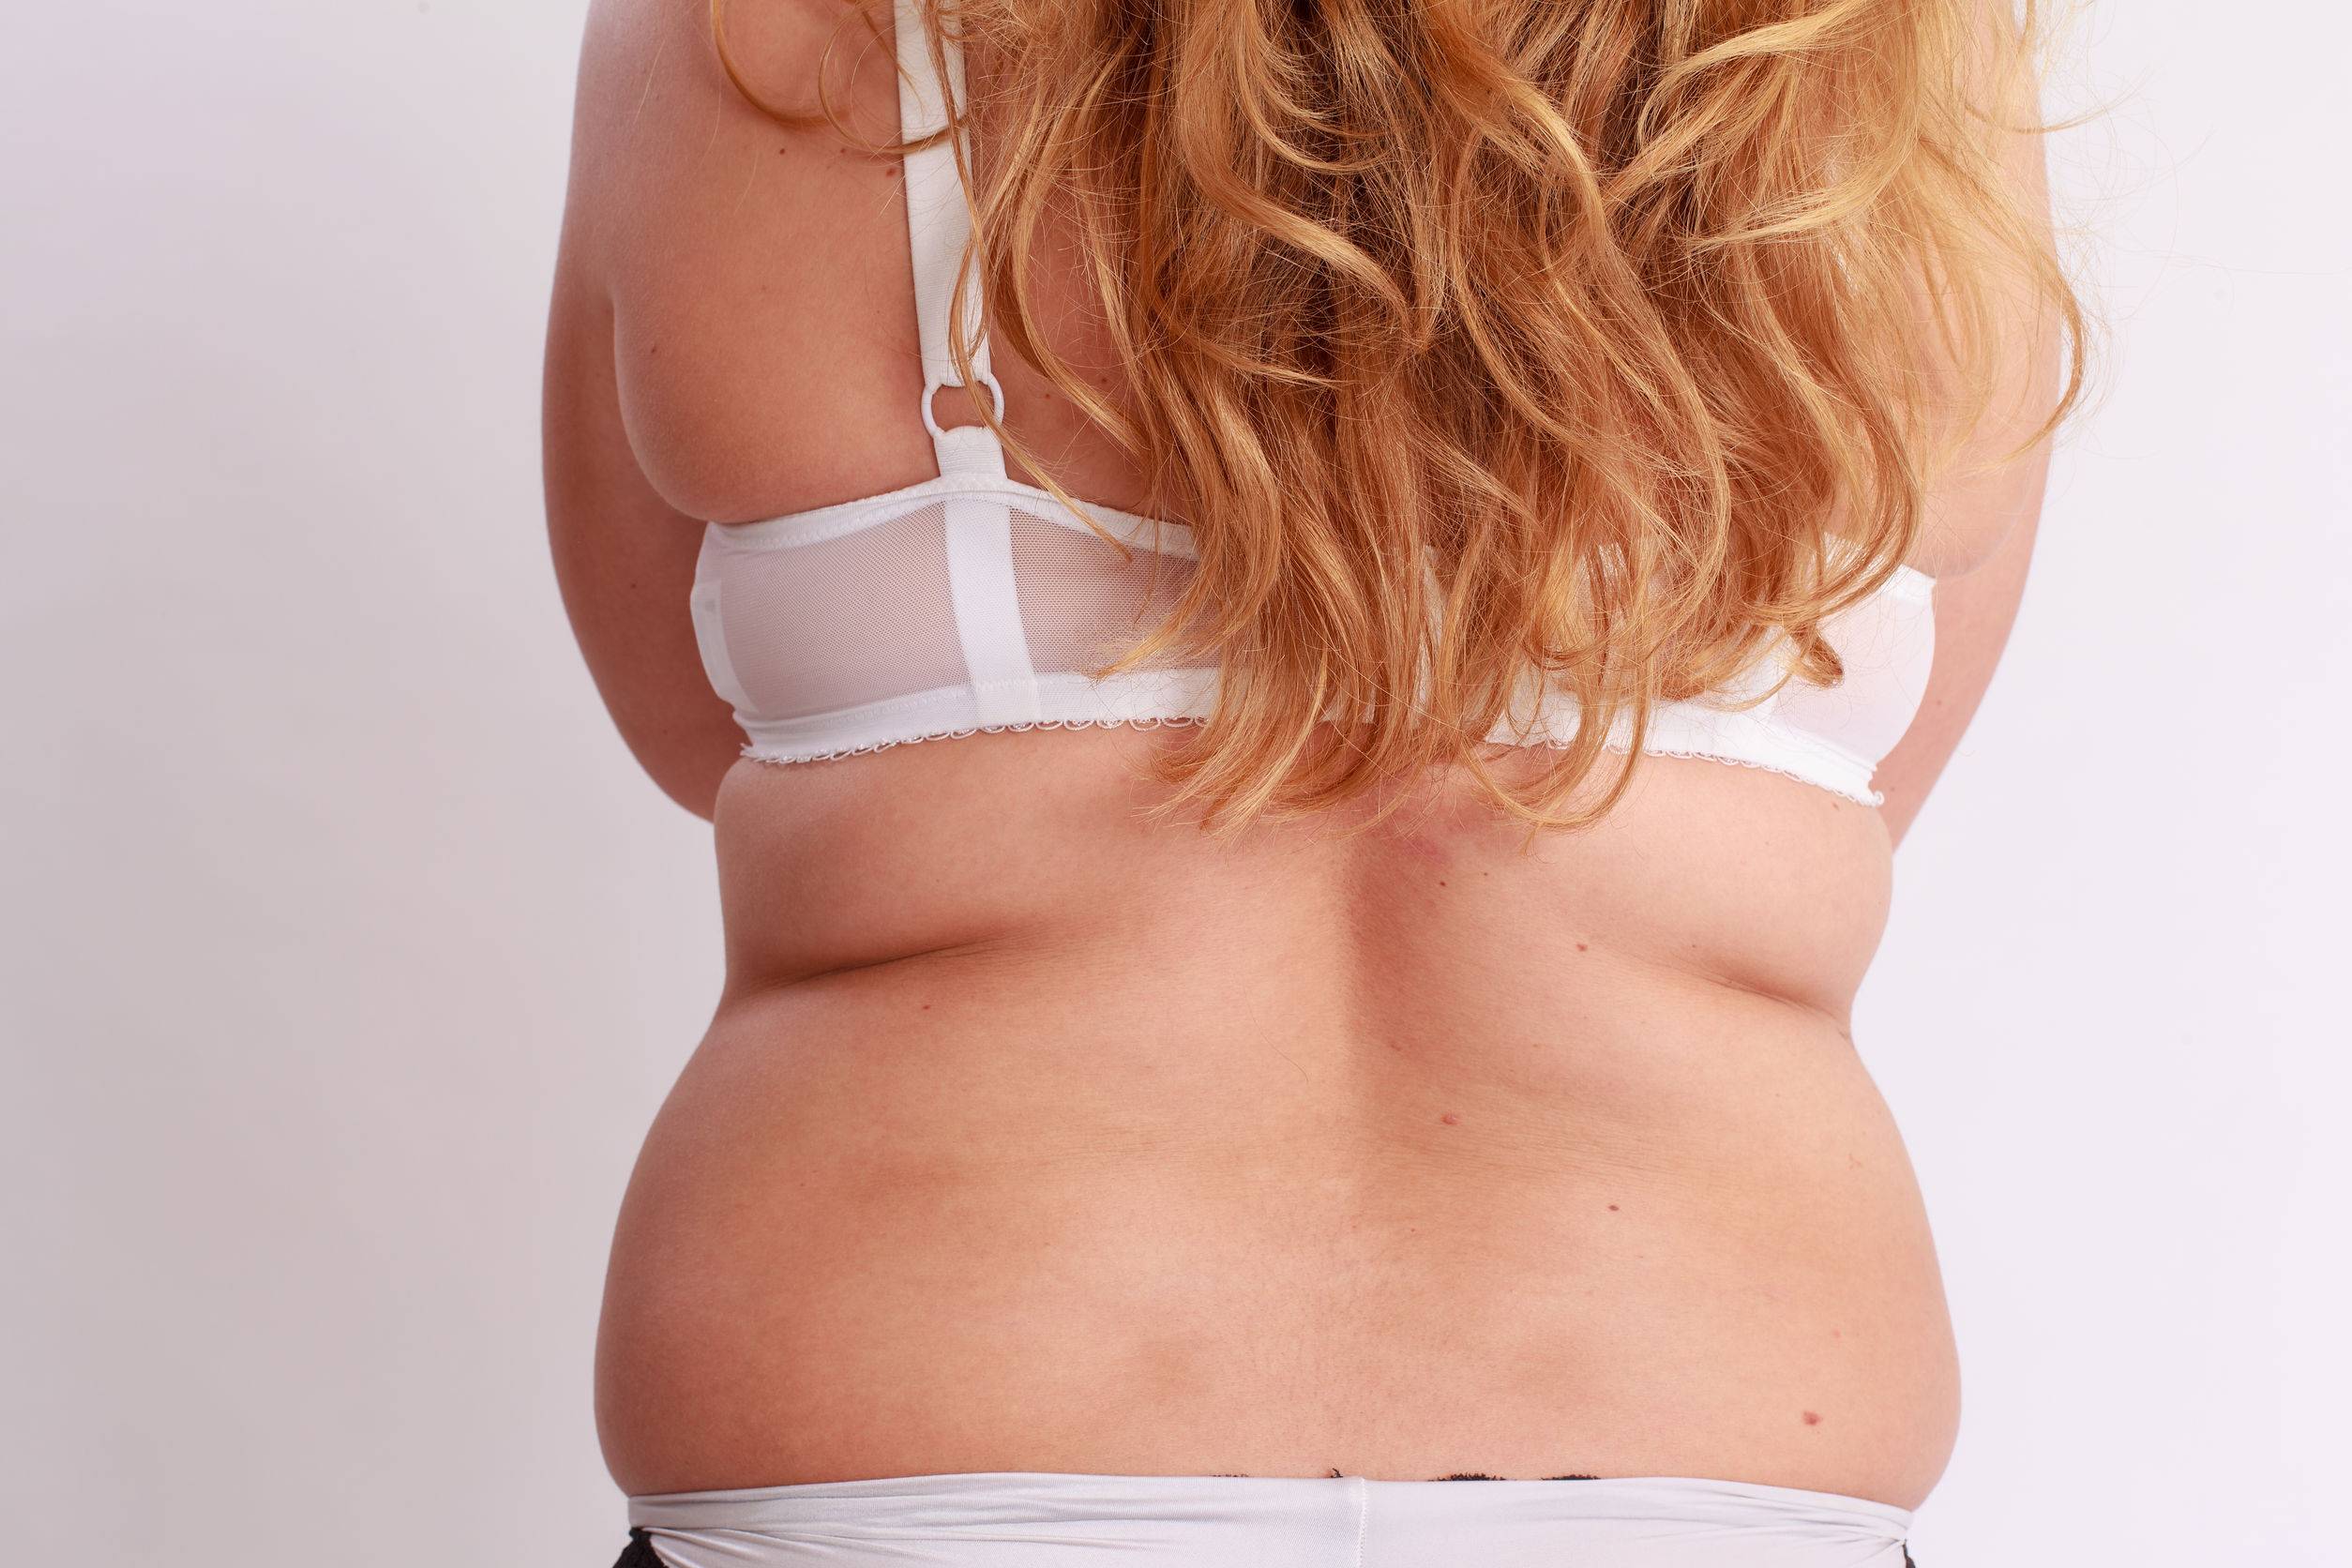 Szereted a duci csajokat? - Tények és tévhitek a kövér nő fétissel kapcsolatban 1